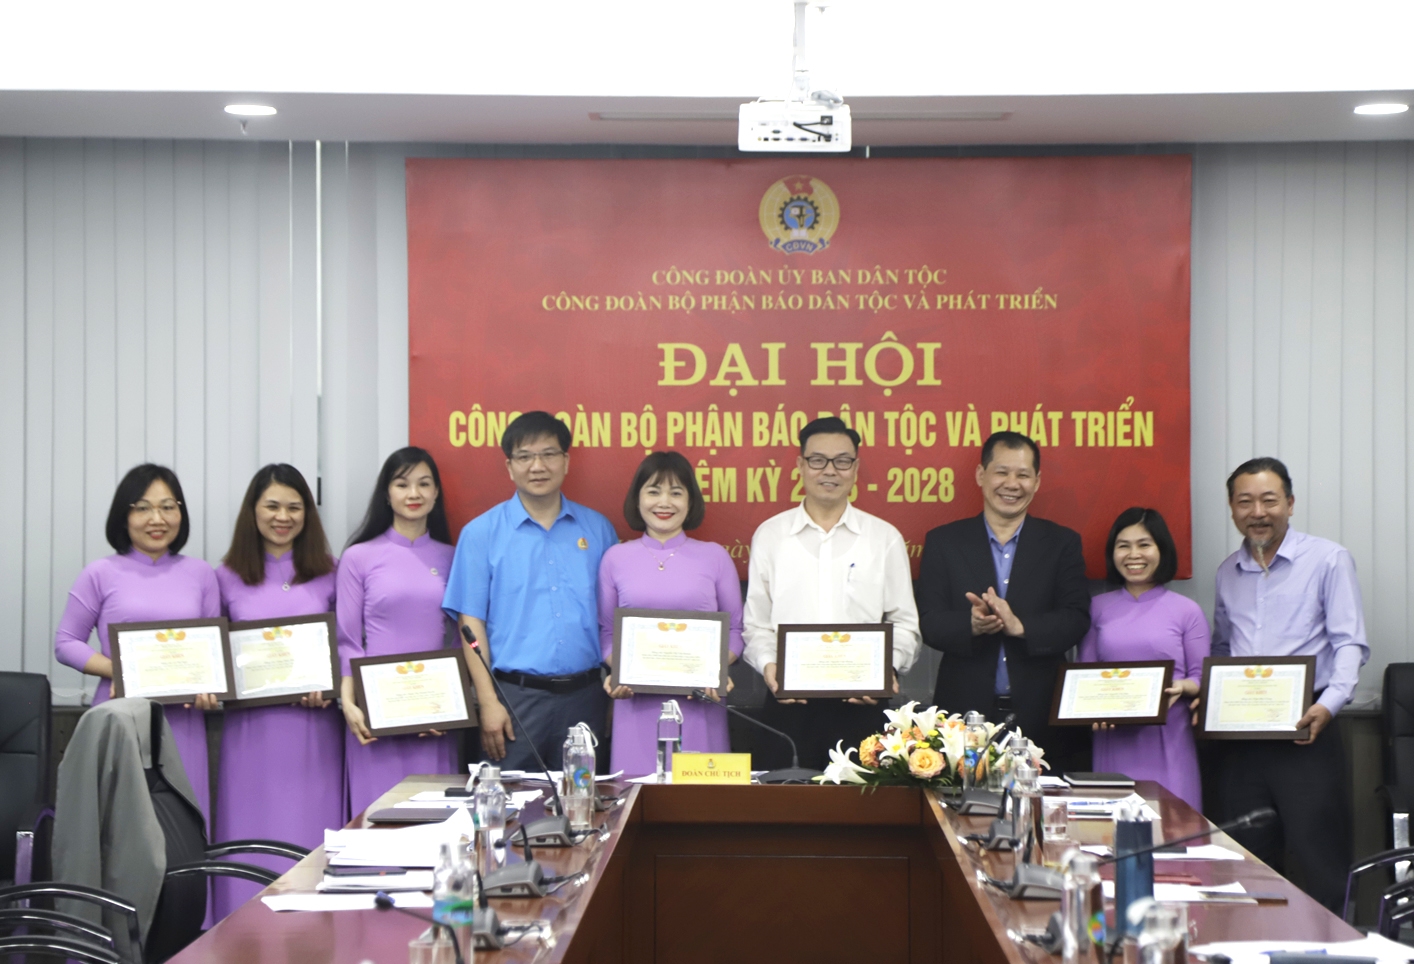 Ông Lý Bình Huy - Phó Vụ trưởng Vụ Tổ chức cán bộ và ông Nguyễn Chí Tuấn - Phó Vụ trưởng Vụ Pháp chế tặng Giấy khen của Công đoàn UBDT cho các cá nhân Công đoàn bộ phận Báo DT&PT